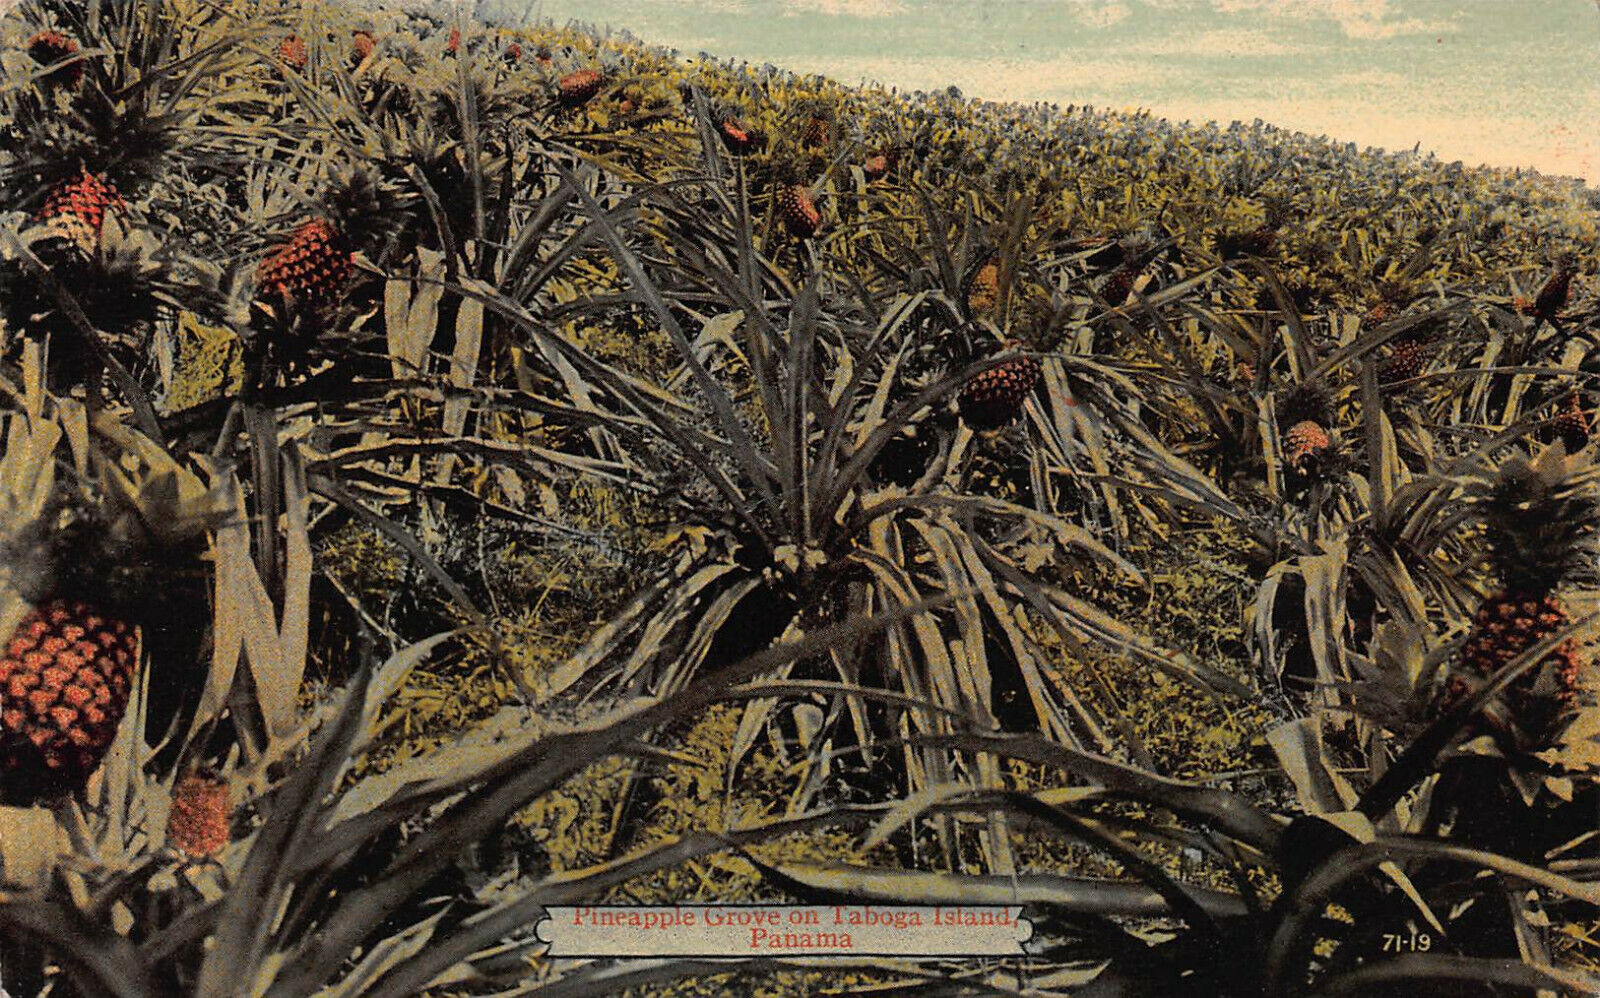 Pineapple Grove on Taboga Island, Panama, Early Postcard, Unused 